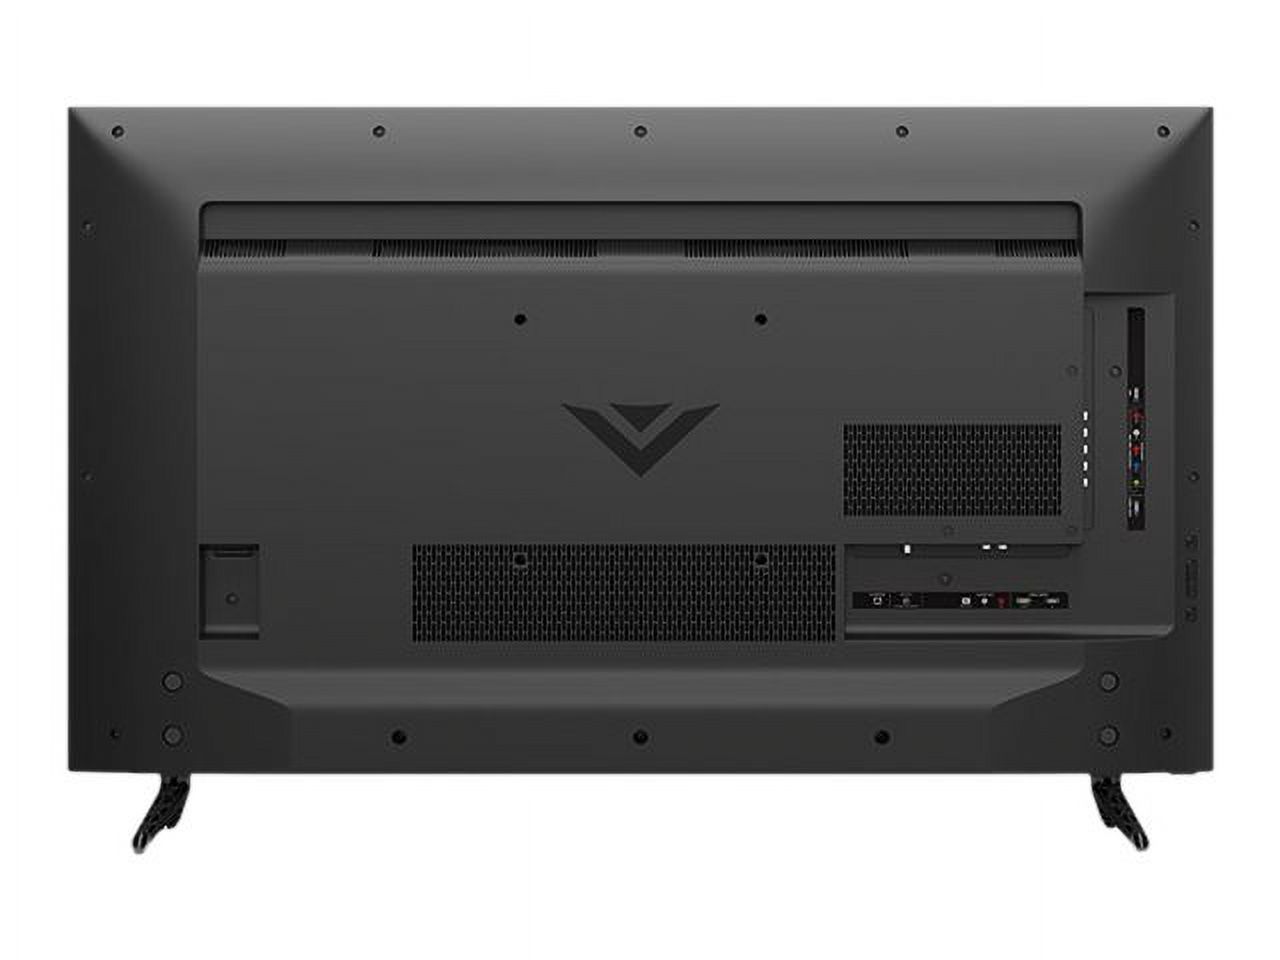 VIZIO SmartCast E50-D1 - 50" Diagonal Class (49.5" viewable) - E Series LED-backlit LCD TV - Smart TV - 1080p 1920 x 1080 - image 4 of 12